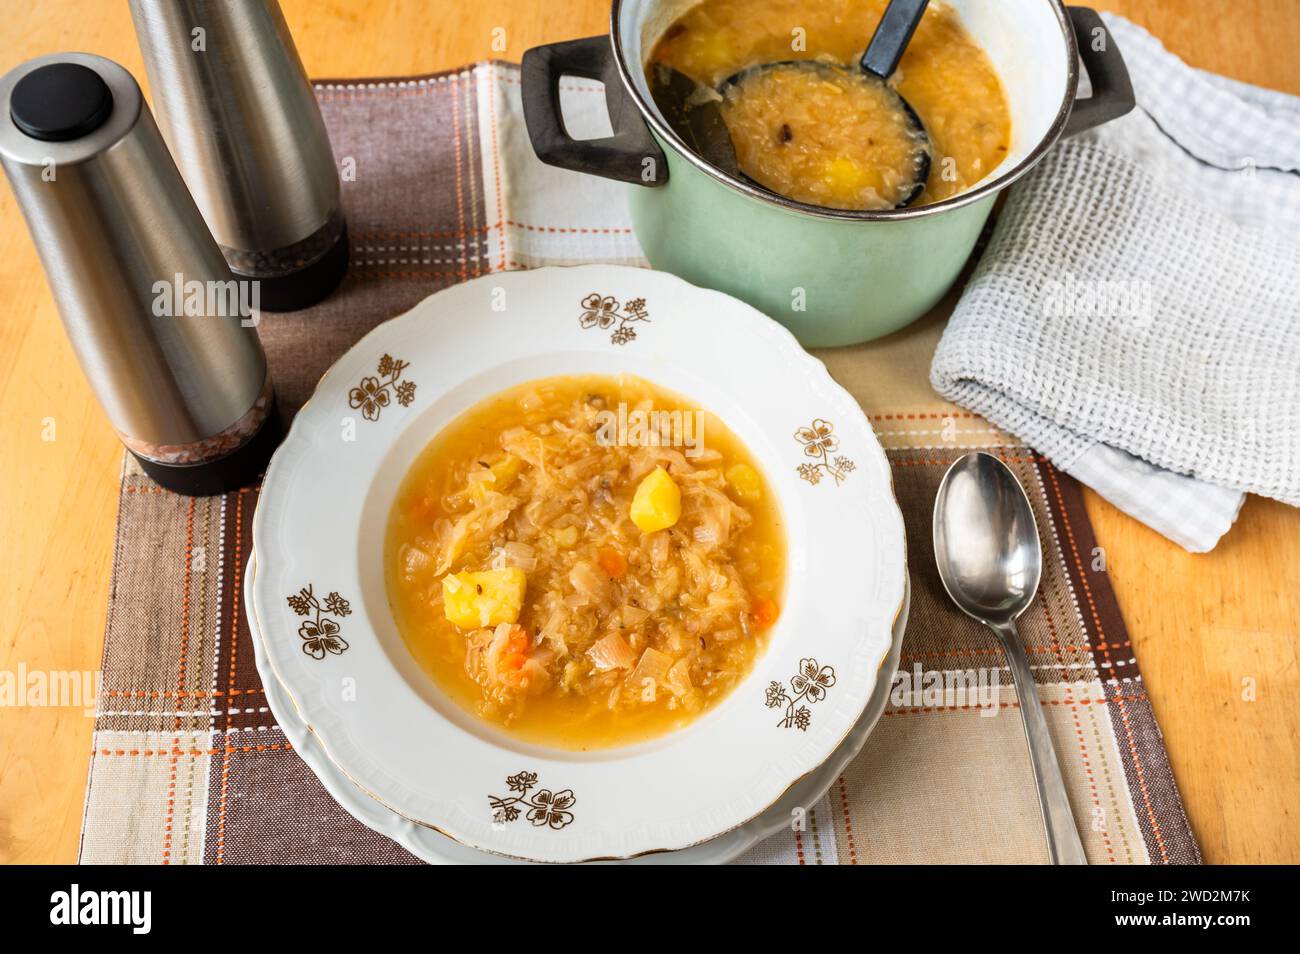 Kohlsuppe mit Kartoffeln im dekorativen Teller, Topf mit Suppe und Kelle, 2 Gewürzregal, Handtuch auf dem Tisch. Stockfoto